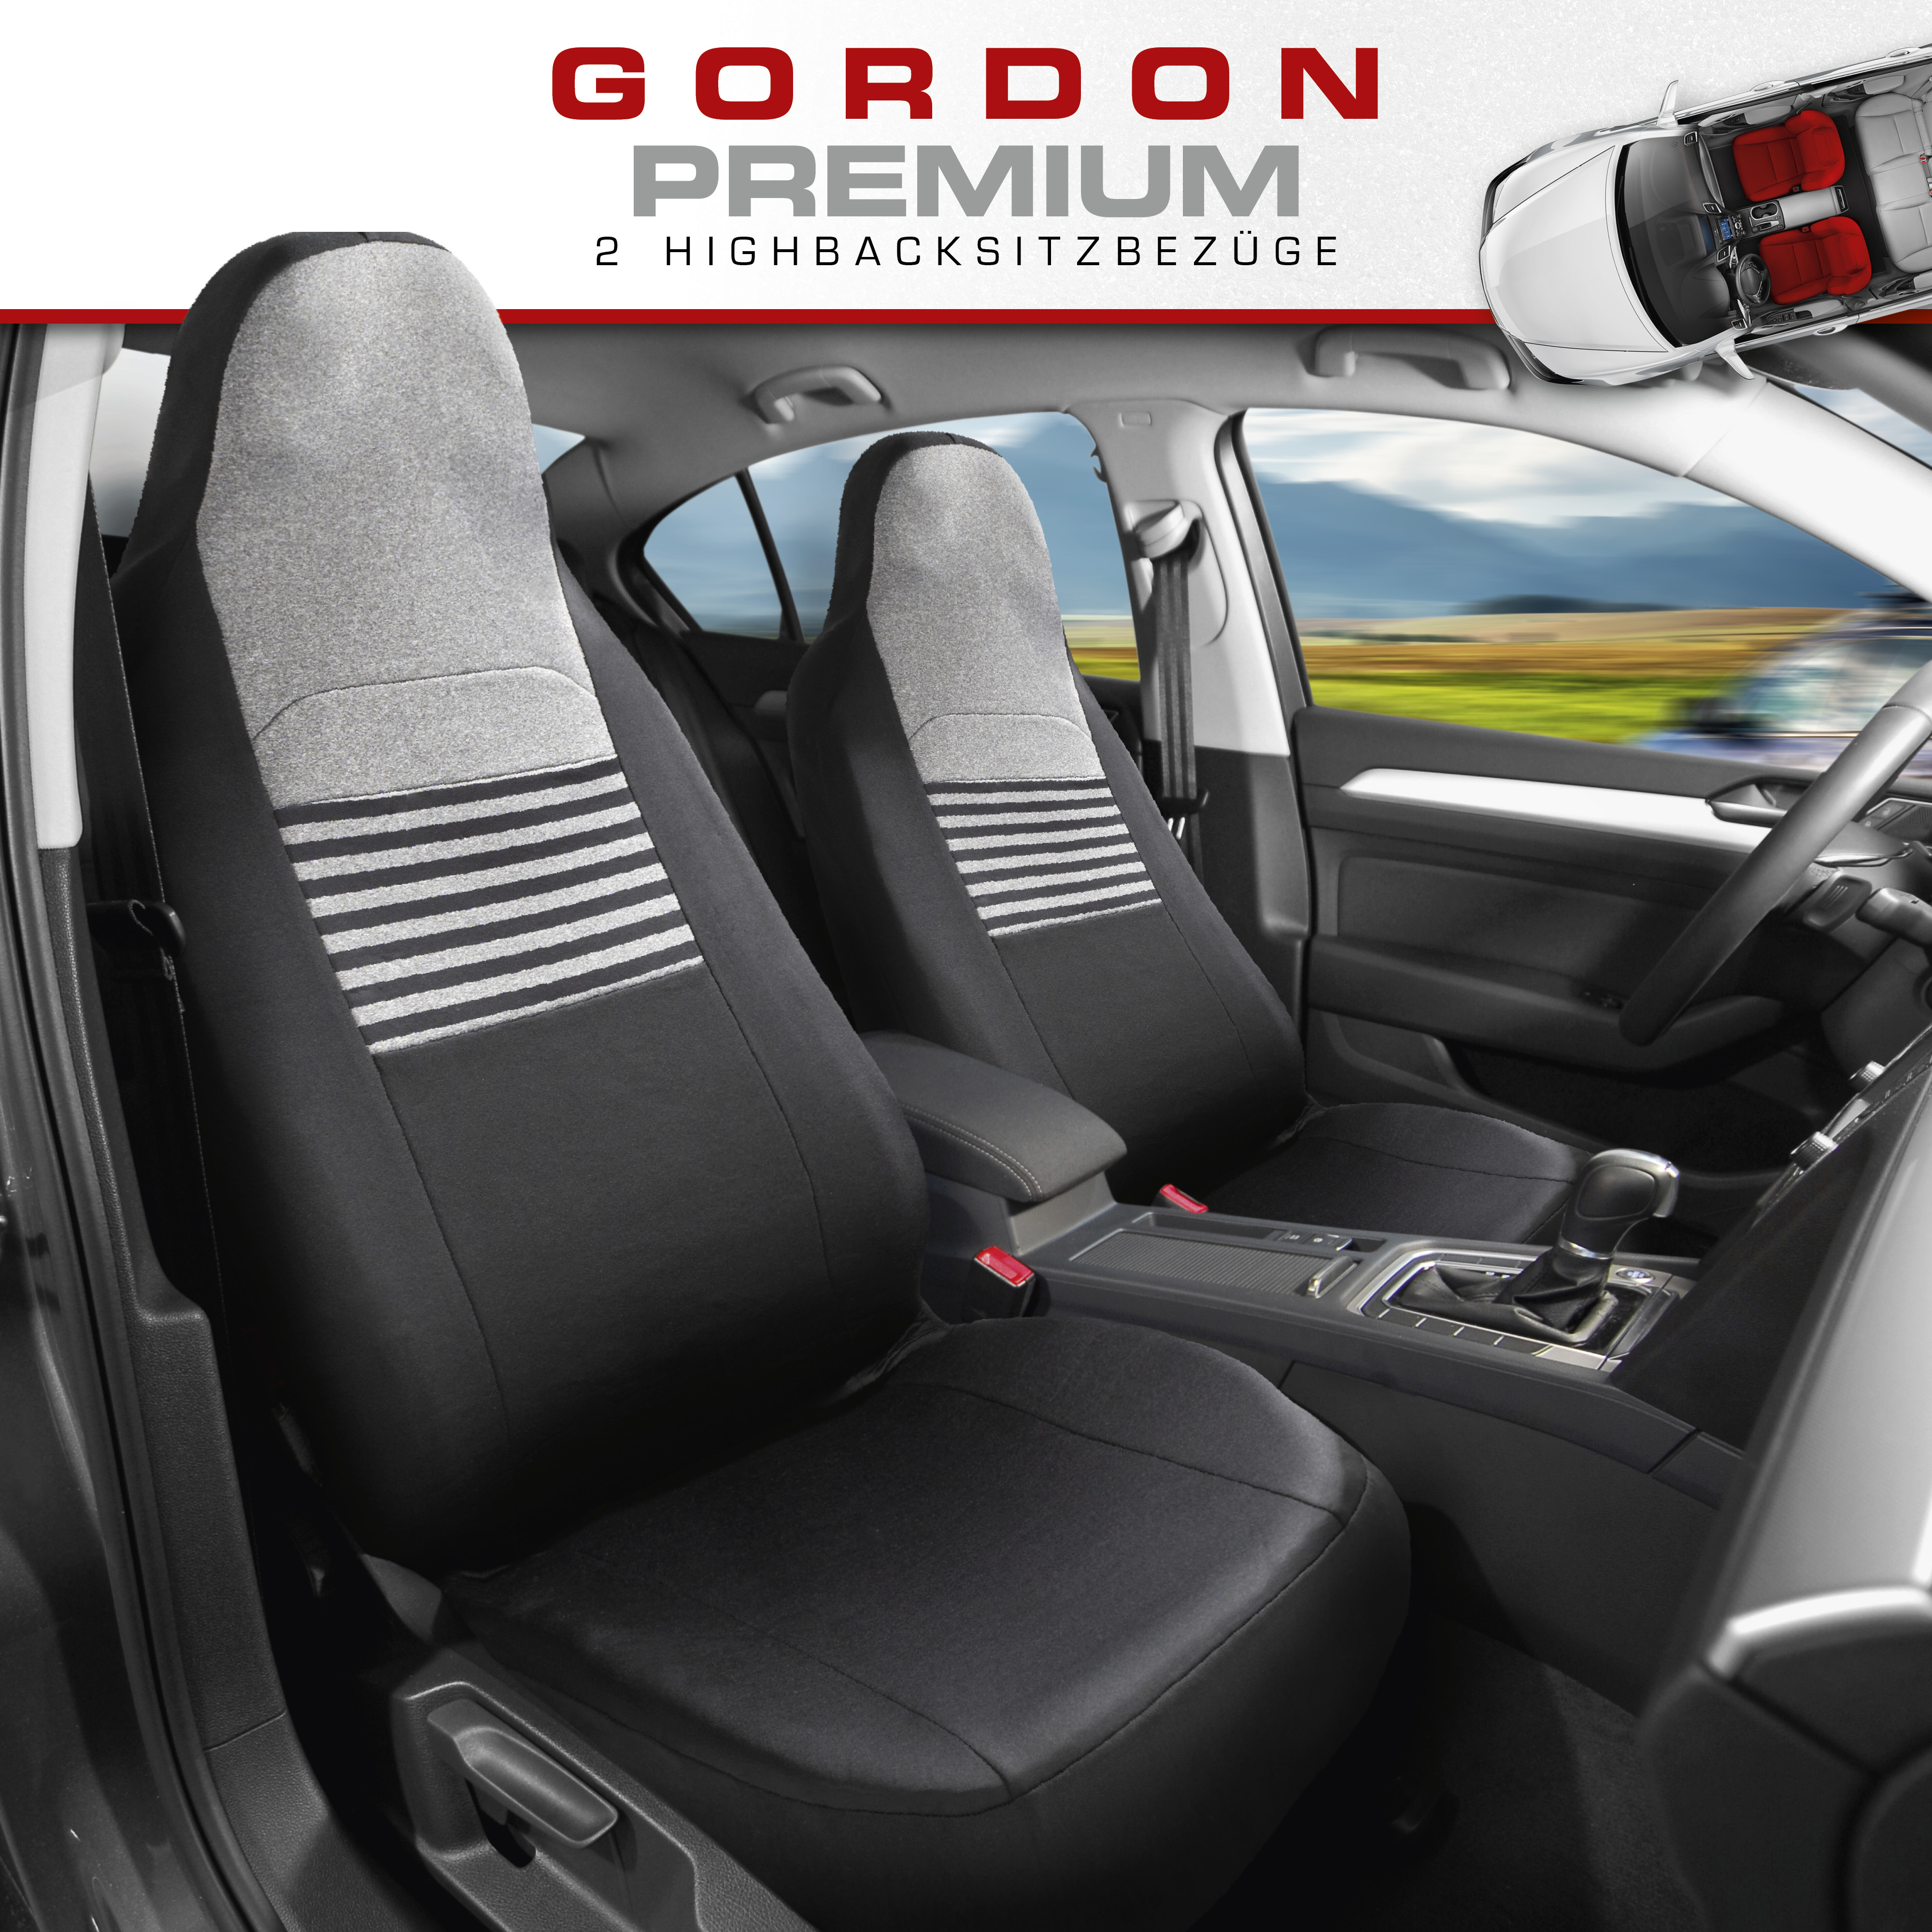 Autositzbezug Gordon für zwei Vordersitze